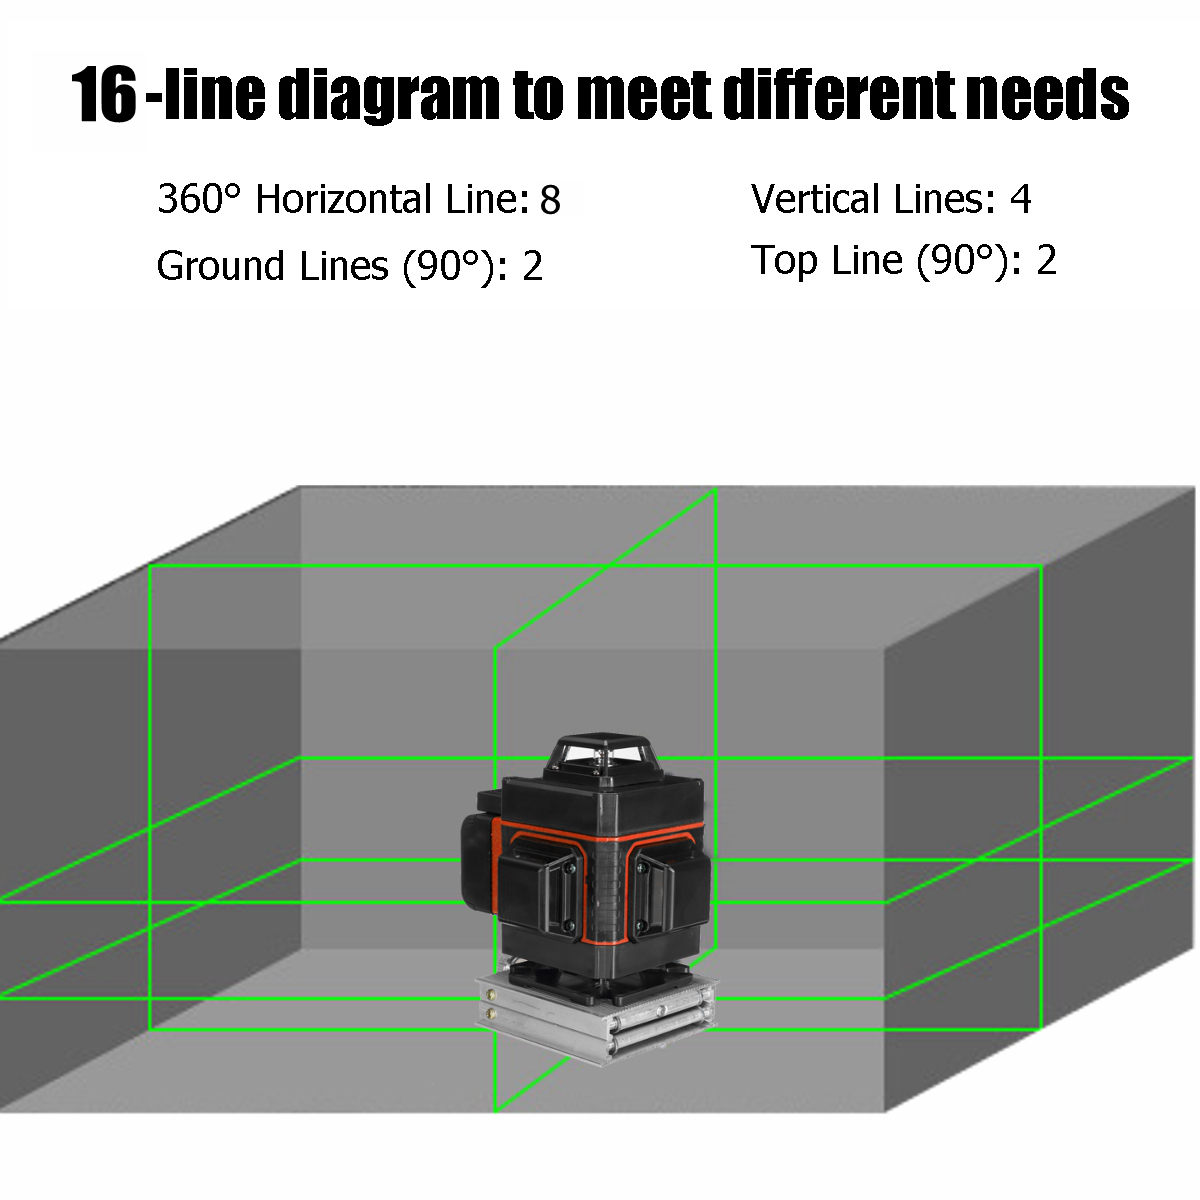 LED-Display-Green-Light-Laser-Level-3D-360deg-12-Line-Cross-Self-Leveling-Measure-Tool-1622590-1